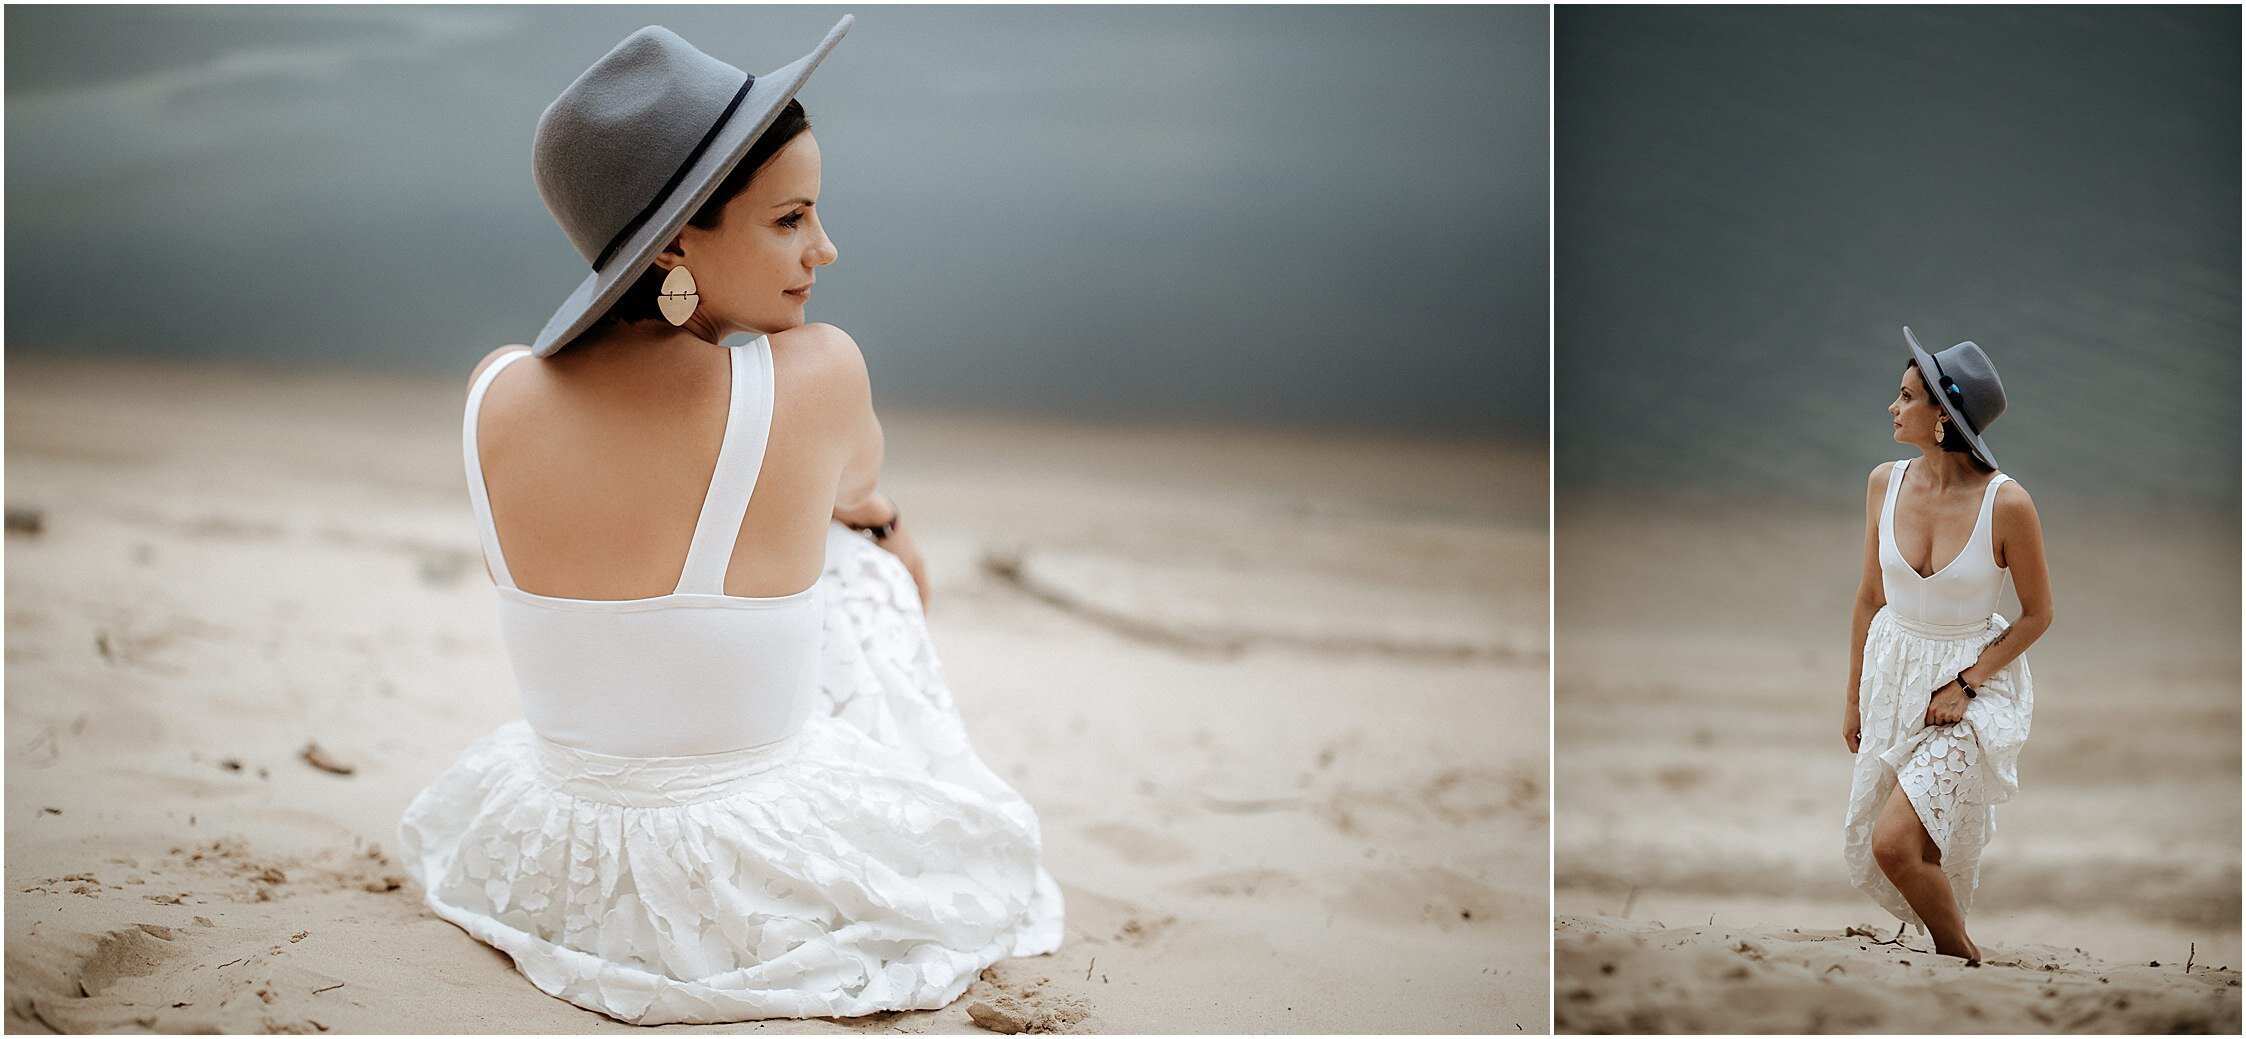 Zanda+Auckland+wedding+photographer+romantic+couple+portrait++white+sand+dunes+Europe+Latvia+New+Zealand_14.jpeg